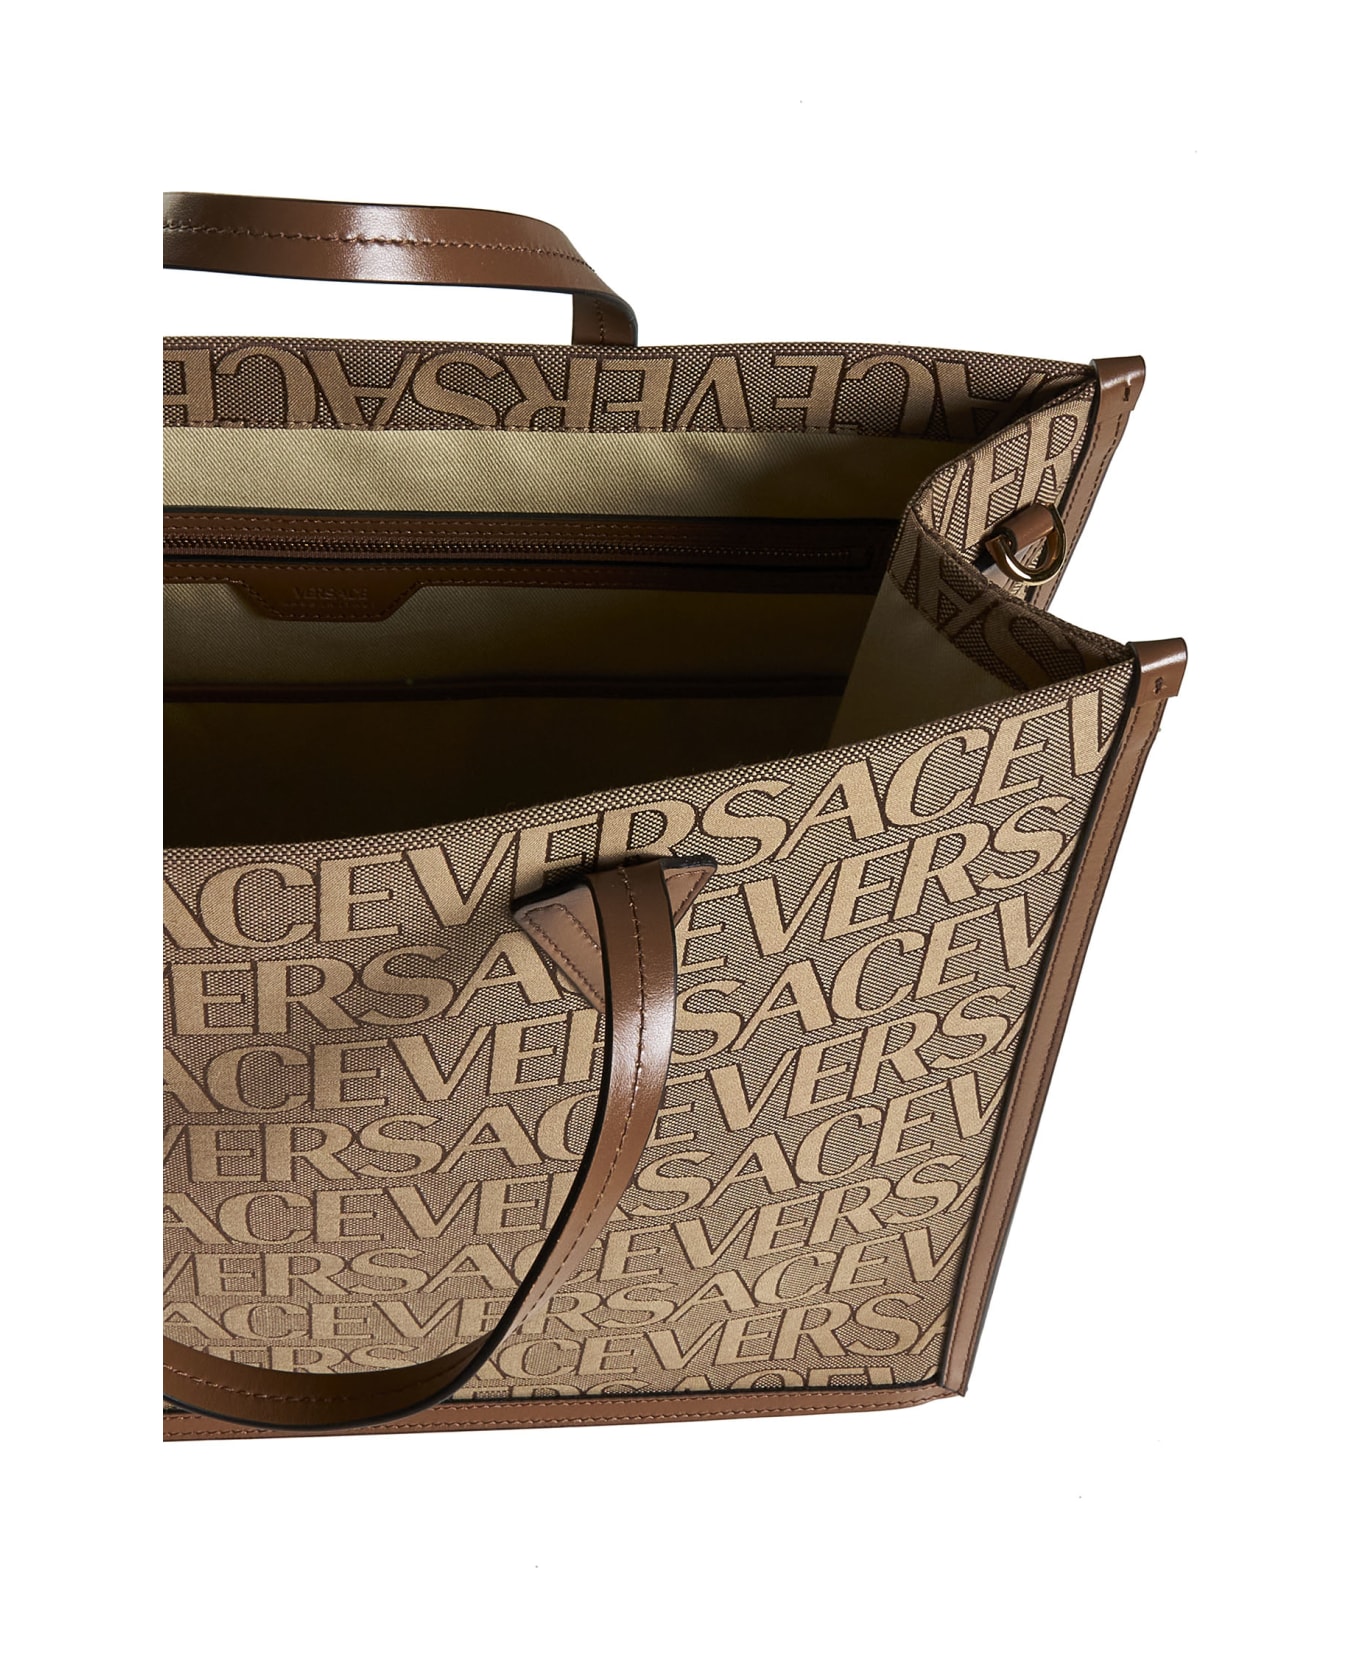 Versace Tote - Beige+brown-oro versace